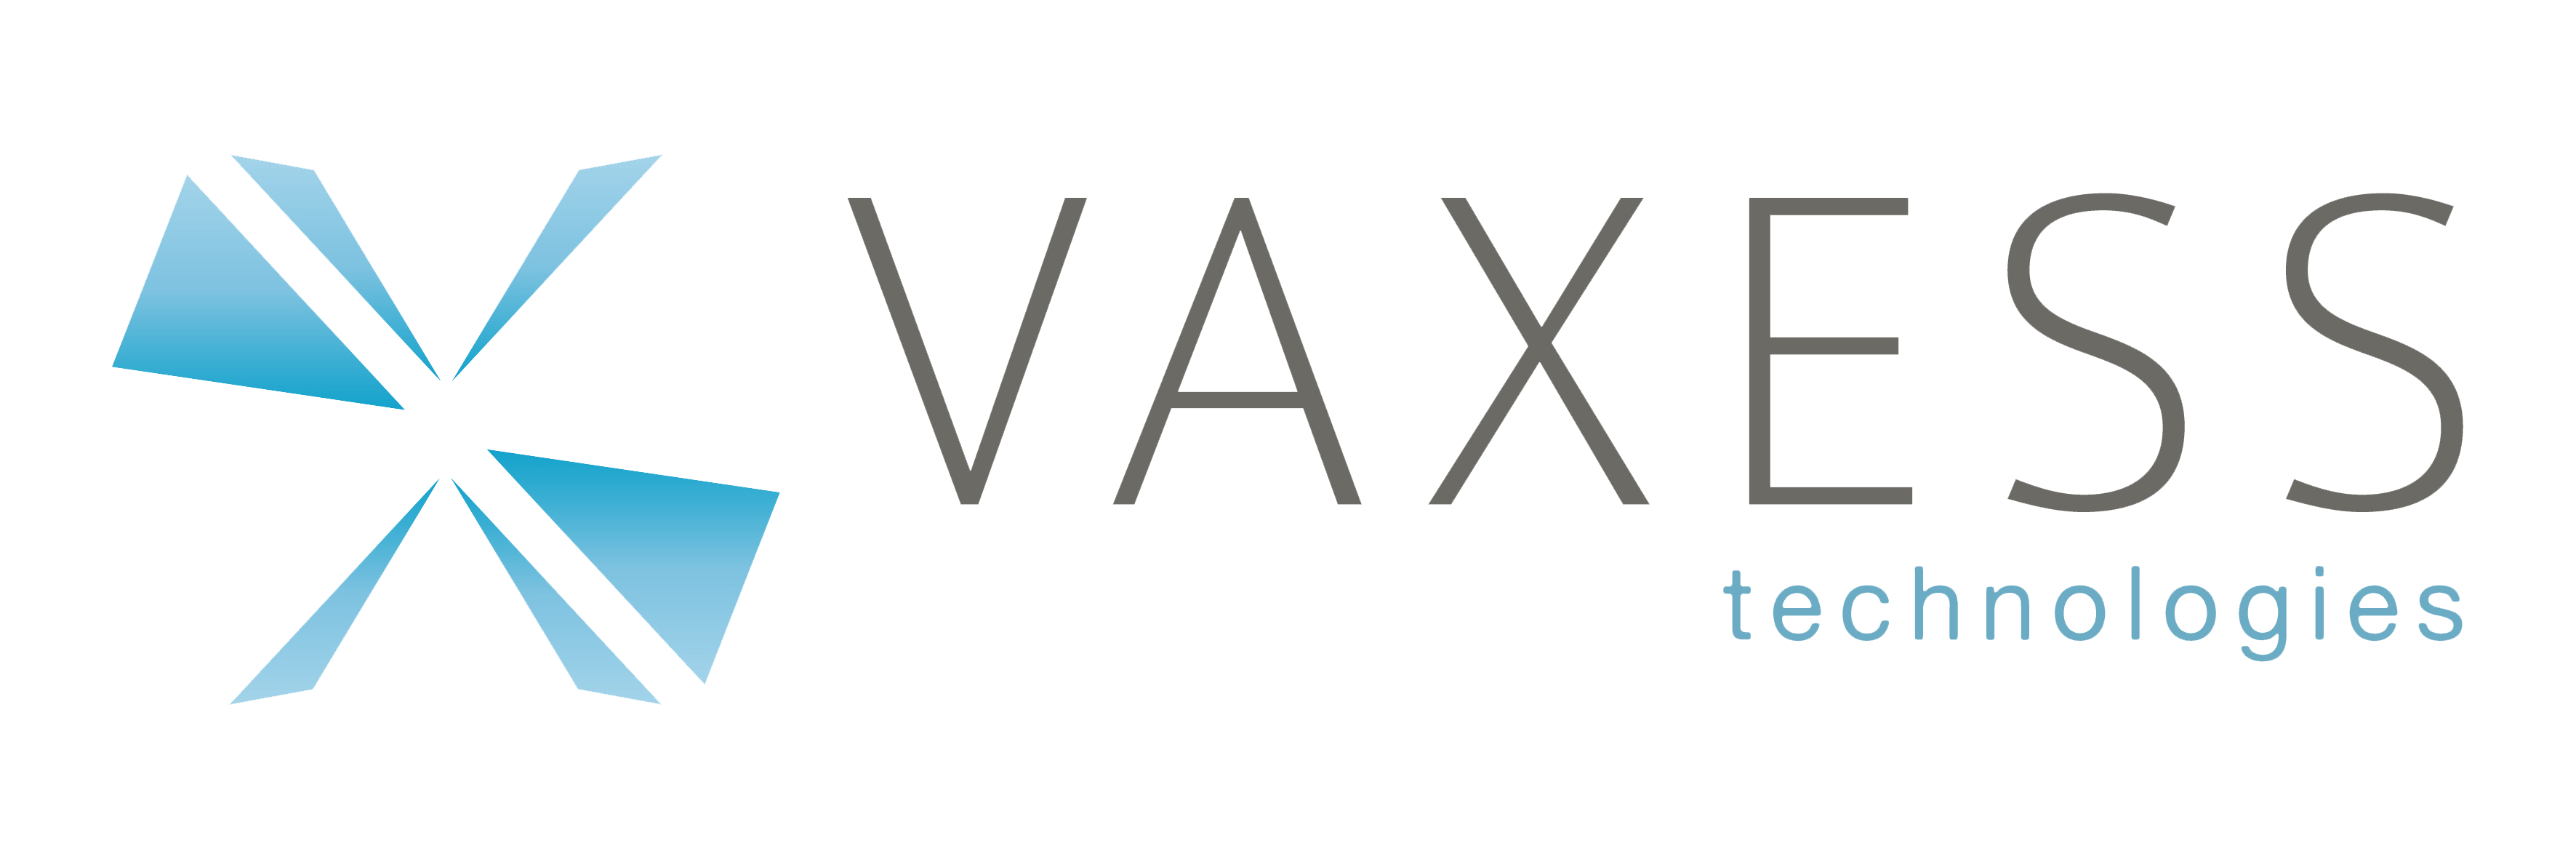 Vaxess Technologies Inc Logo